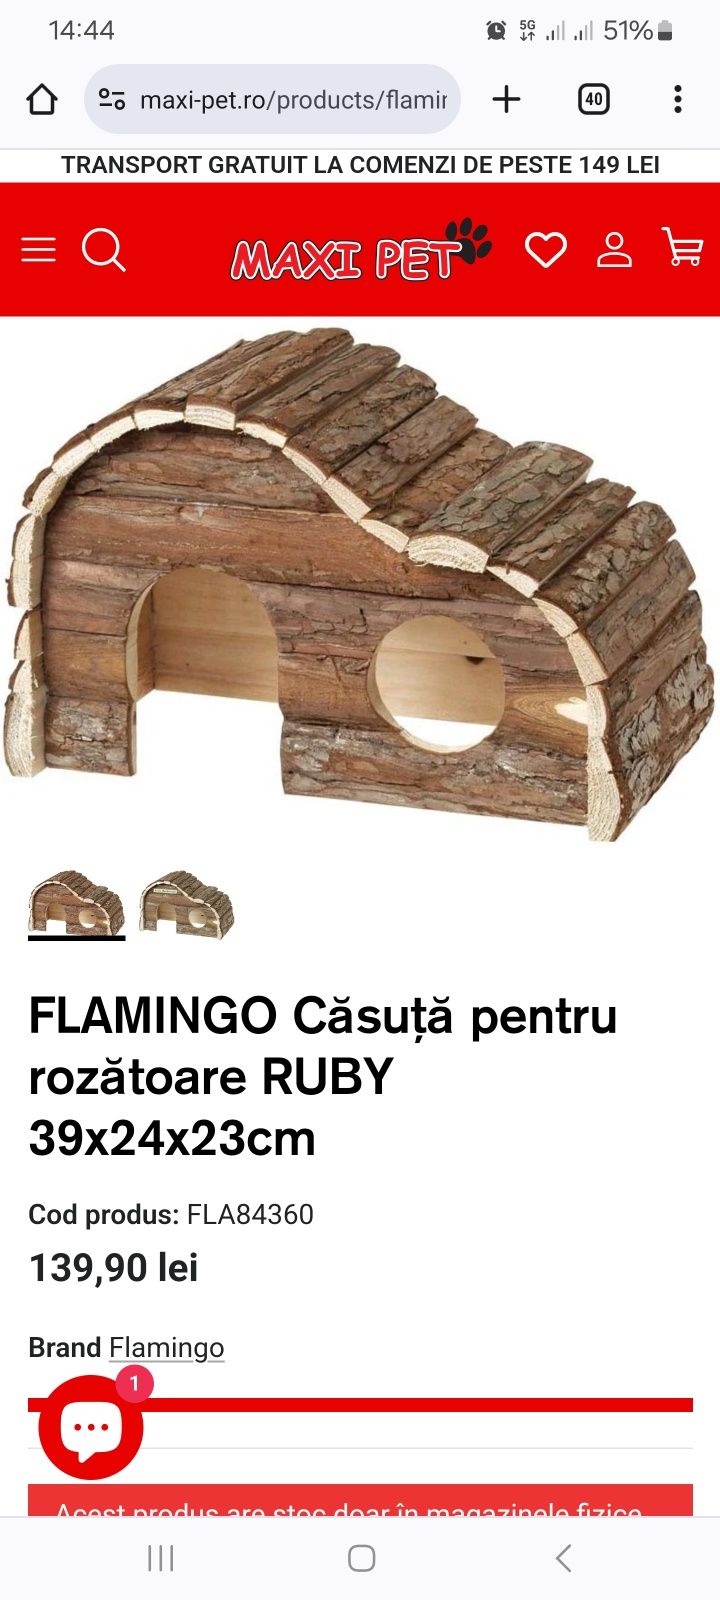 FLAMINGO Căsuţă pentru rozătoare RUBY 39x24x23cm